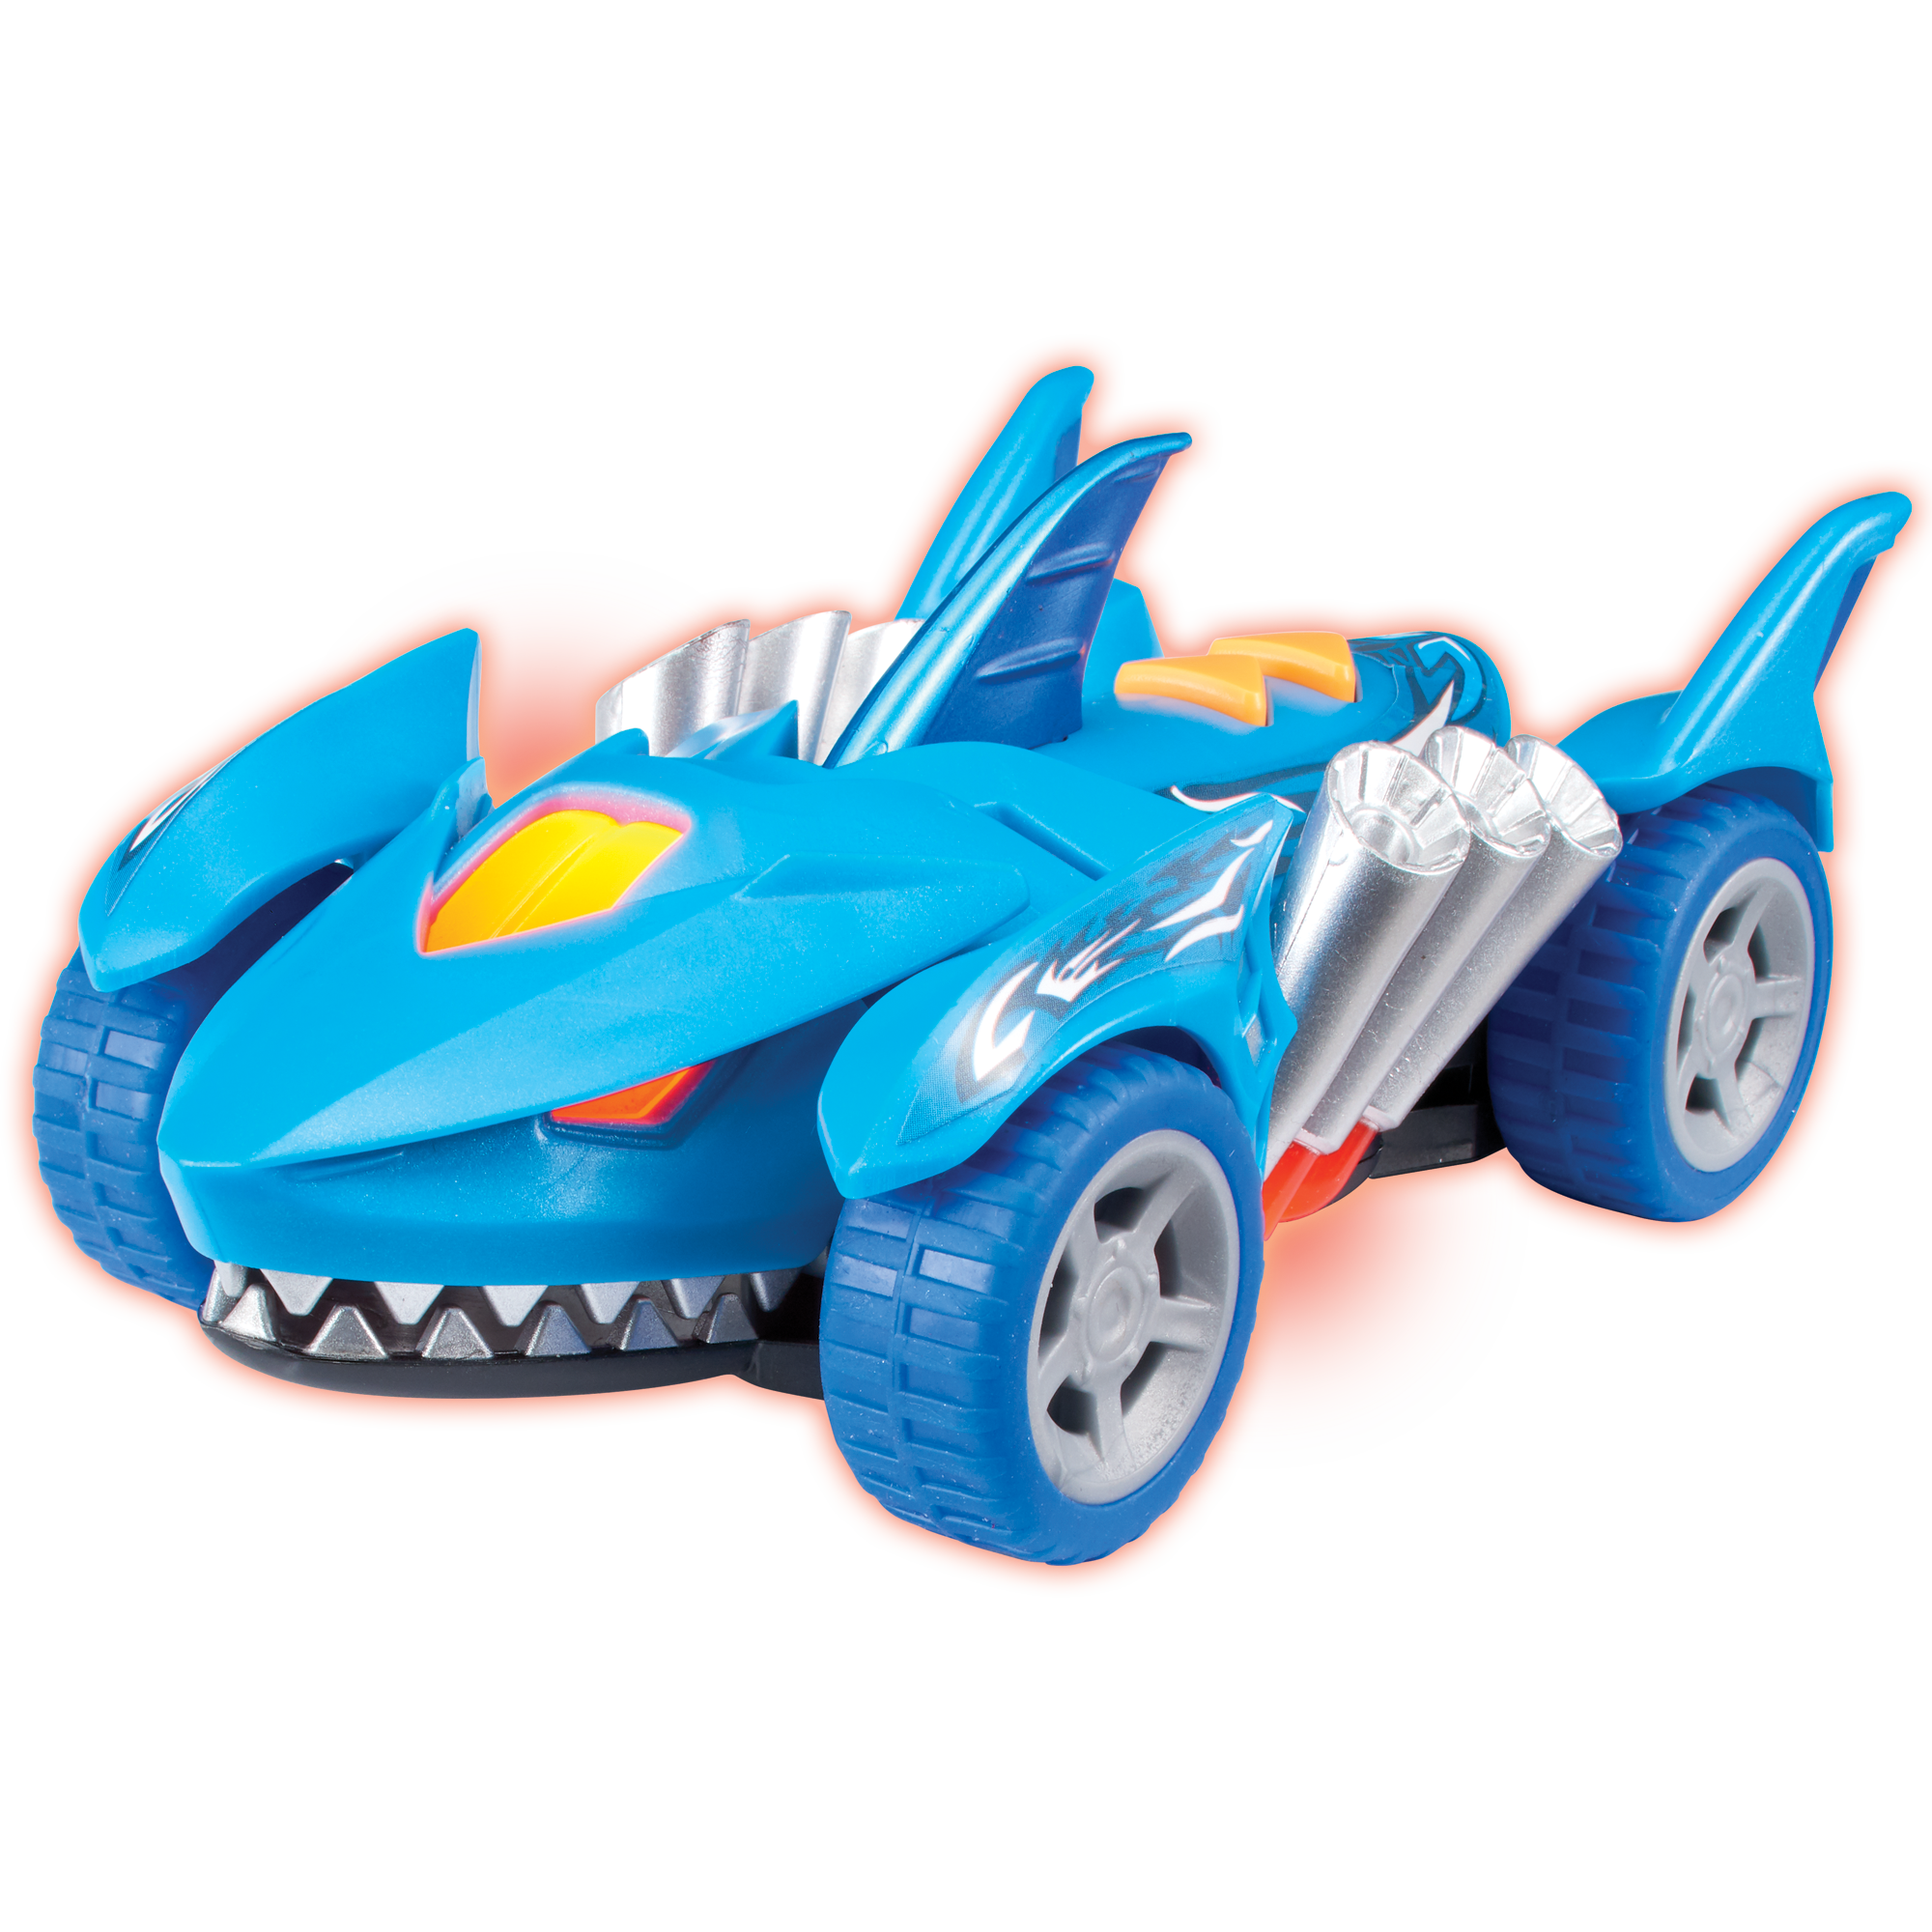 Mini car squalo - MOTOR & CO.